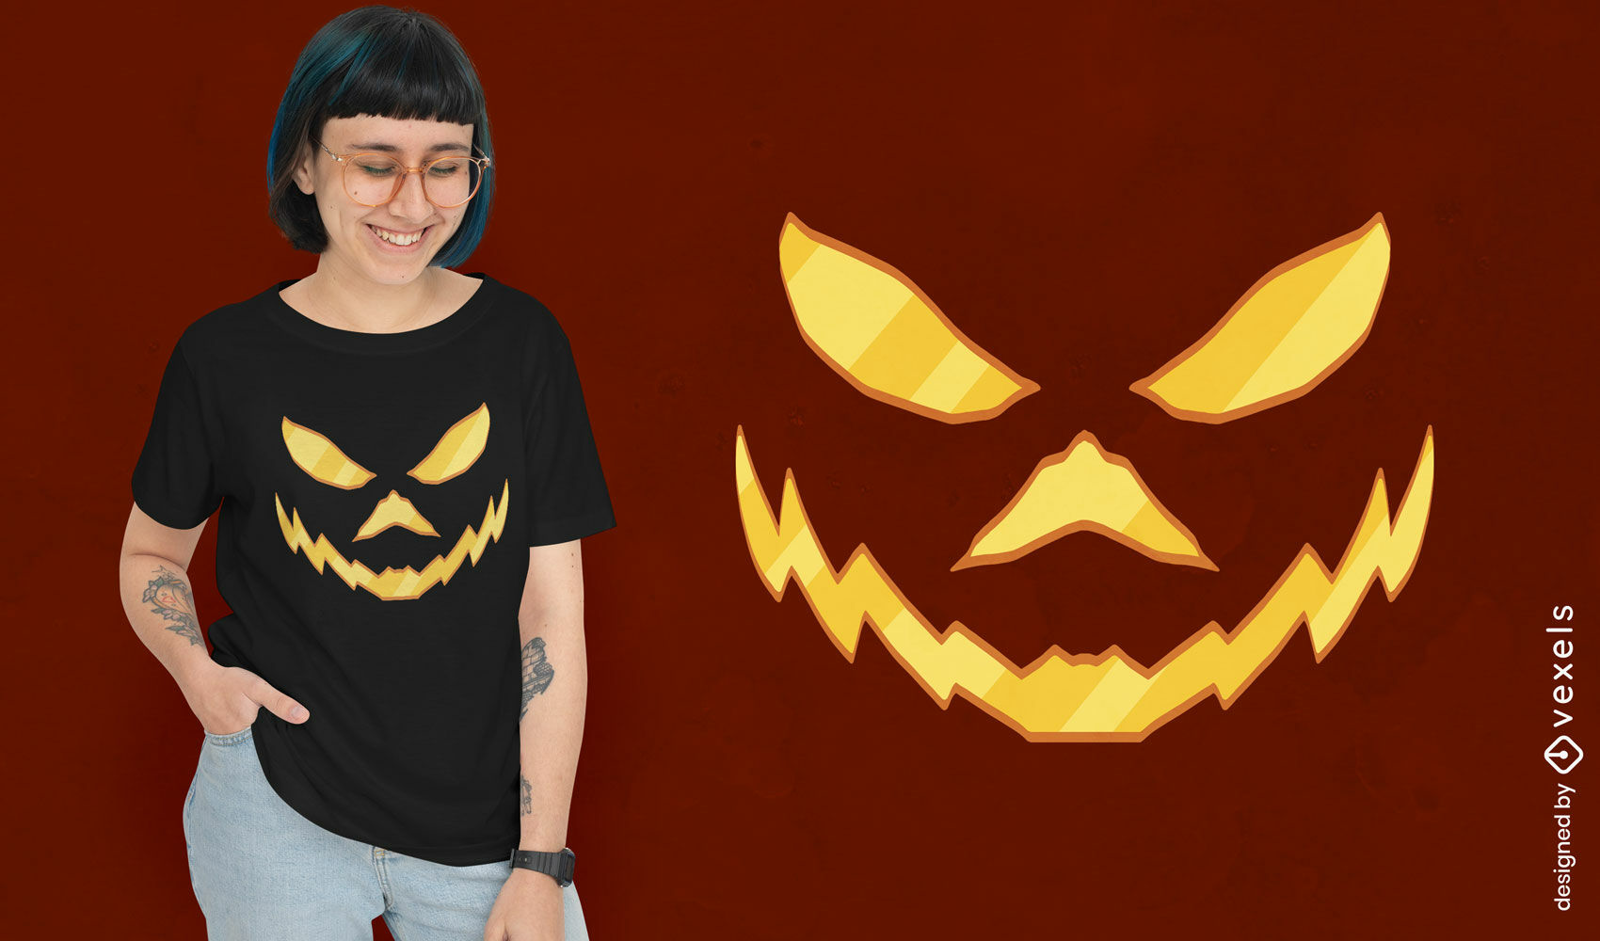 Jack O' Lantern Face T-shirt Design Vector Download